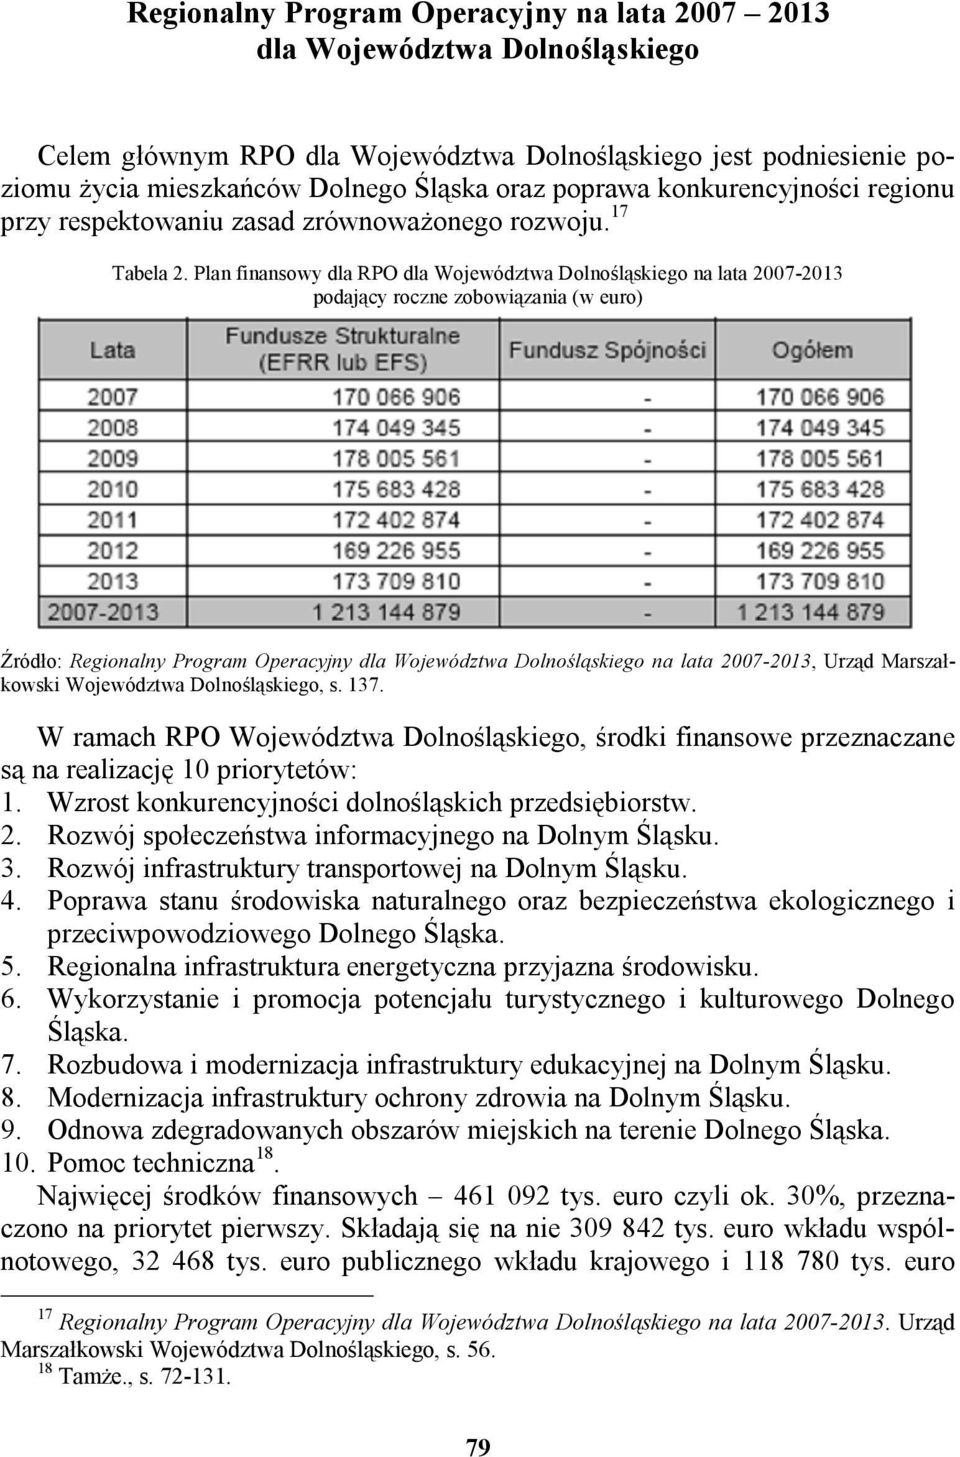 Plan finansowy dla RPO dla Województwa Dolnośląskiego na lata 2007-2013 podający roczne zobowiązania (w euro) Źródło: Regionalny Program Operacyjny dla Województwa Dolnośląskiego na lata 2007-2013,